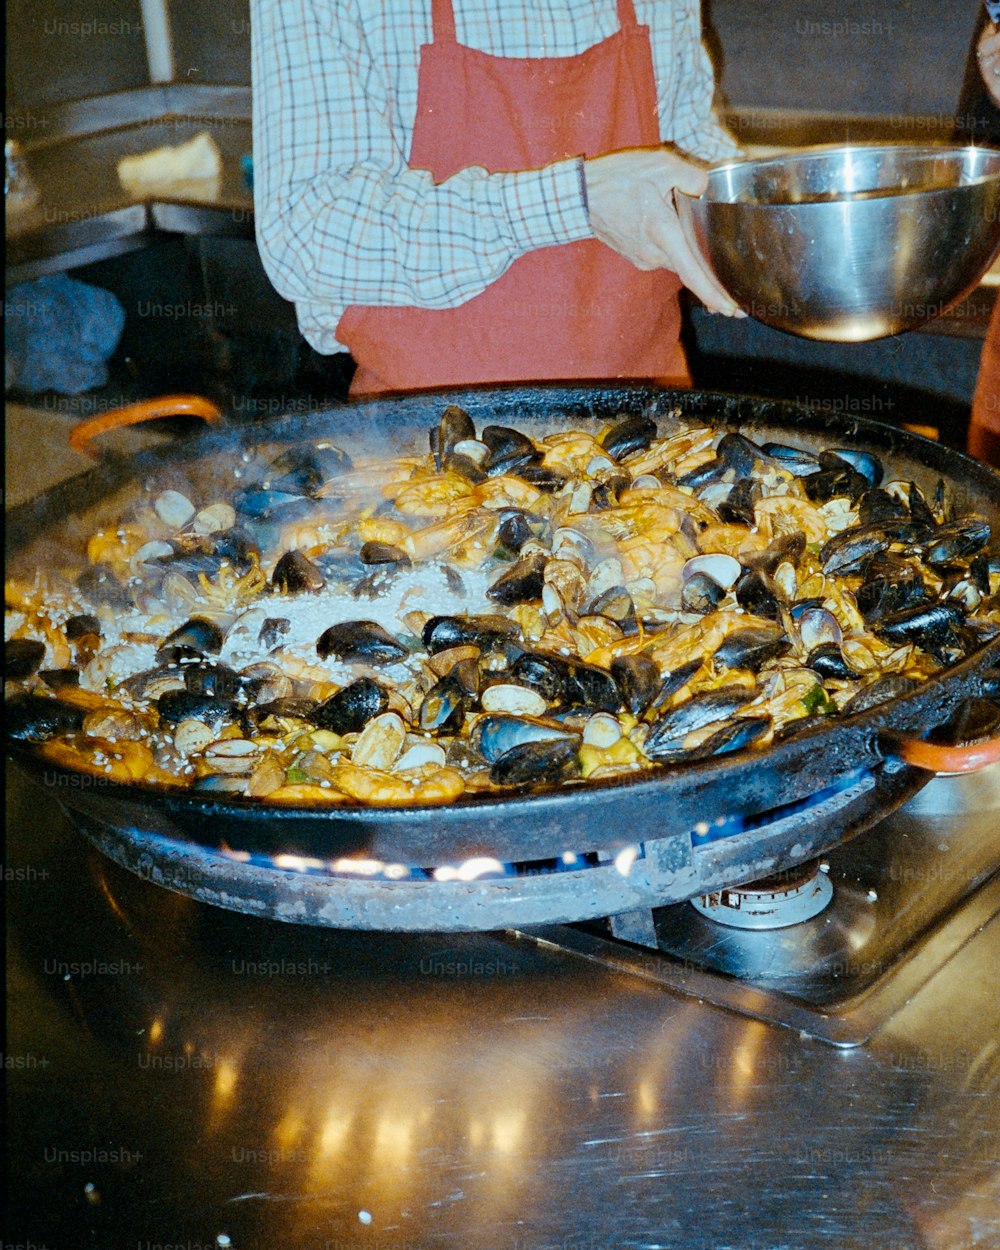 食べ物の鍋がストーブで調理されています